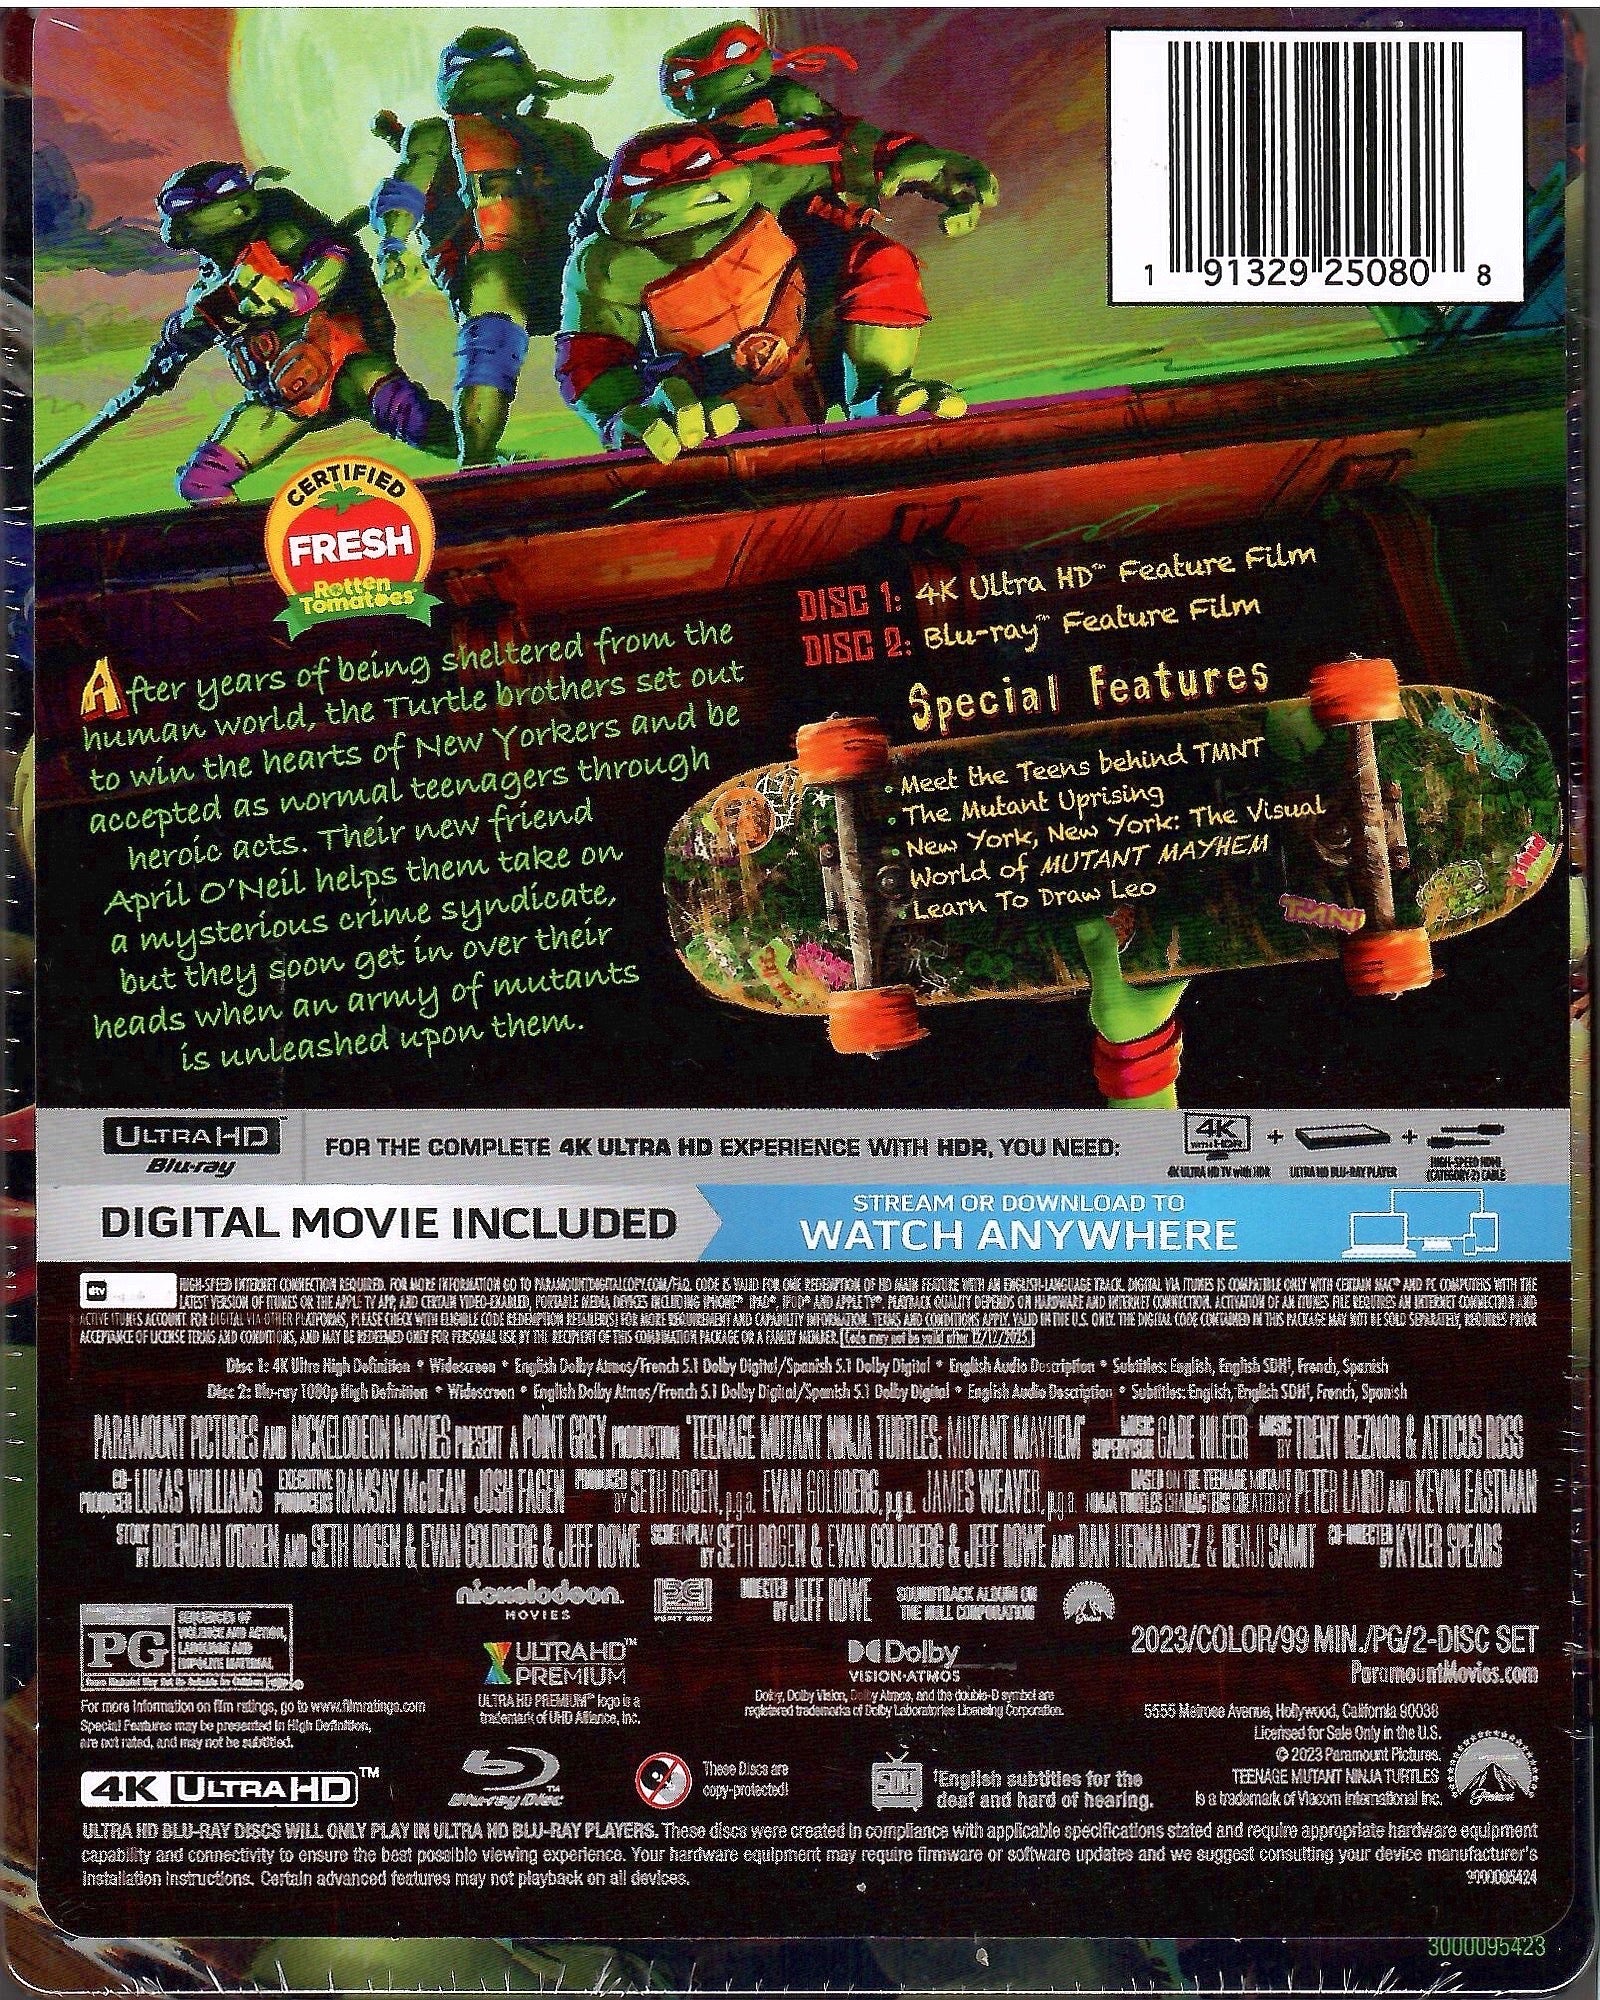 Teenage Mutant Ninja Turtles: Mutant Mayhem (steelbook) (4k/uhd) : Target